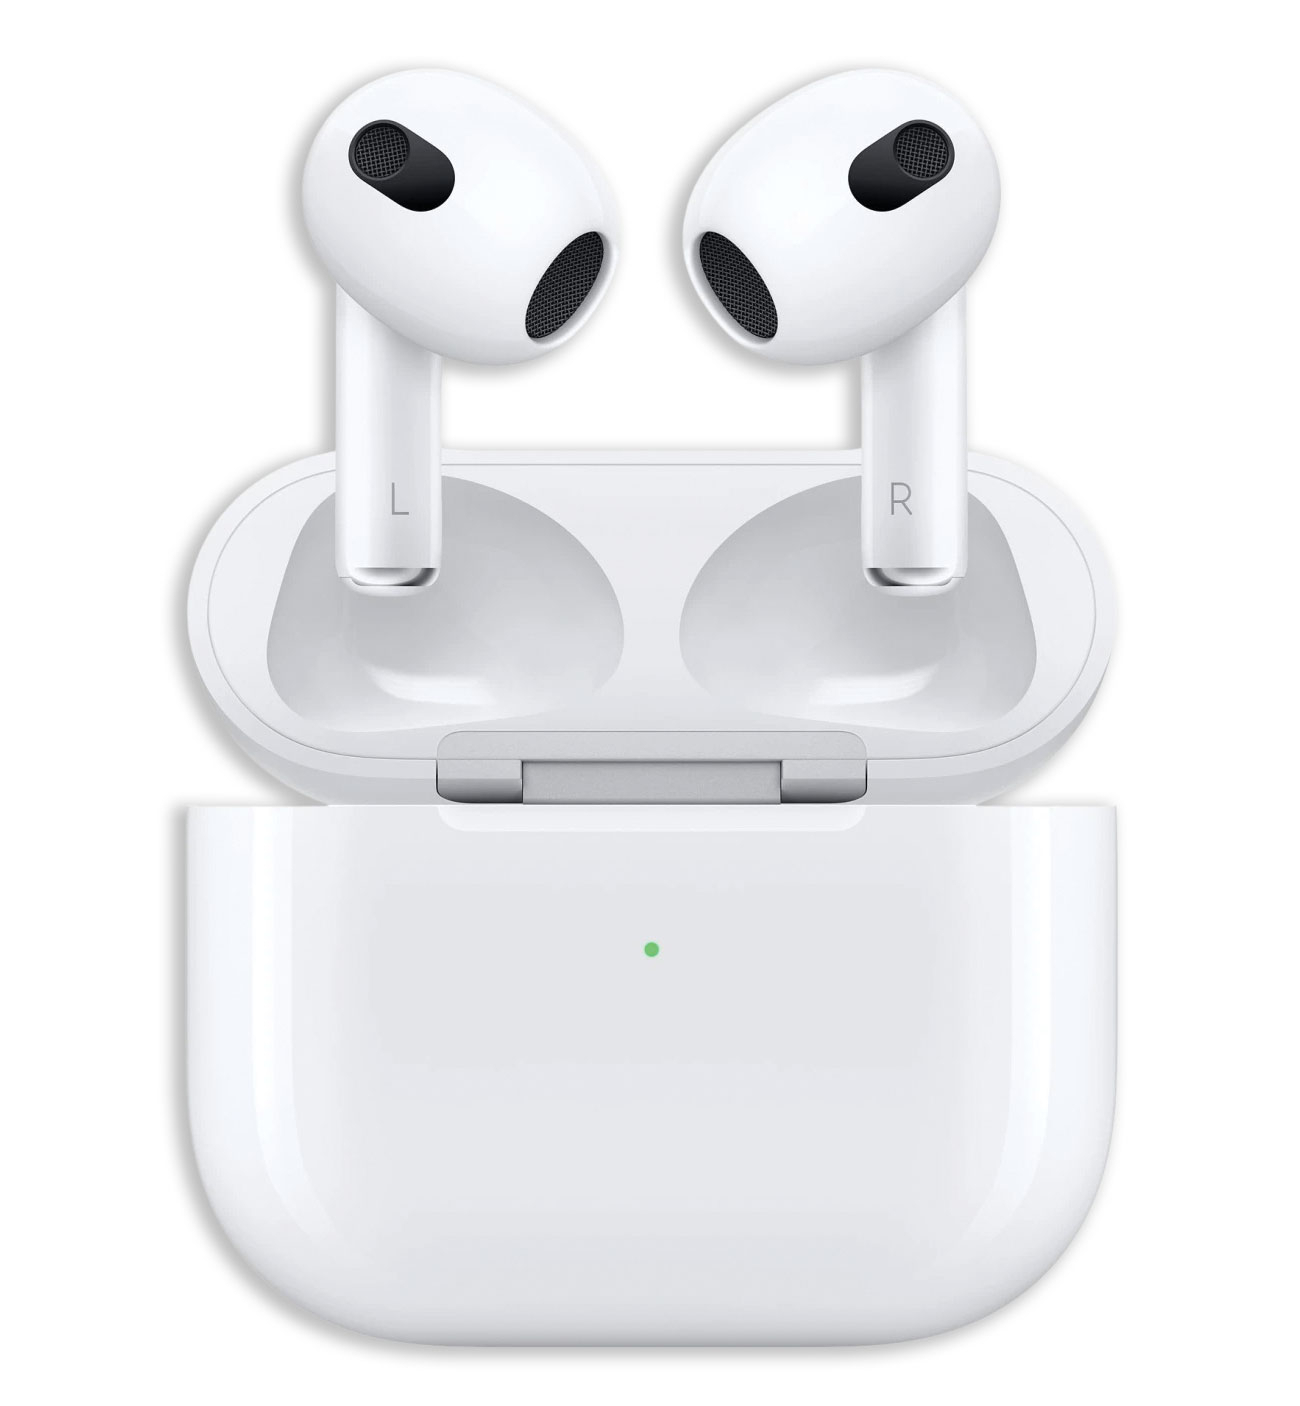 Apple AirPods vraiment sans fil avec étui de recharge MagSafe